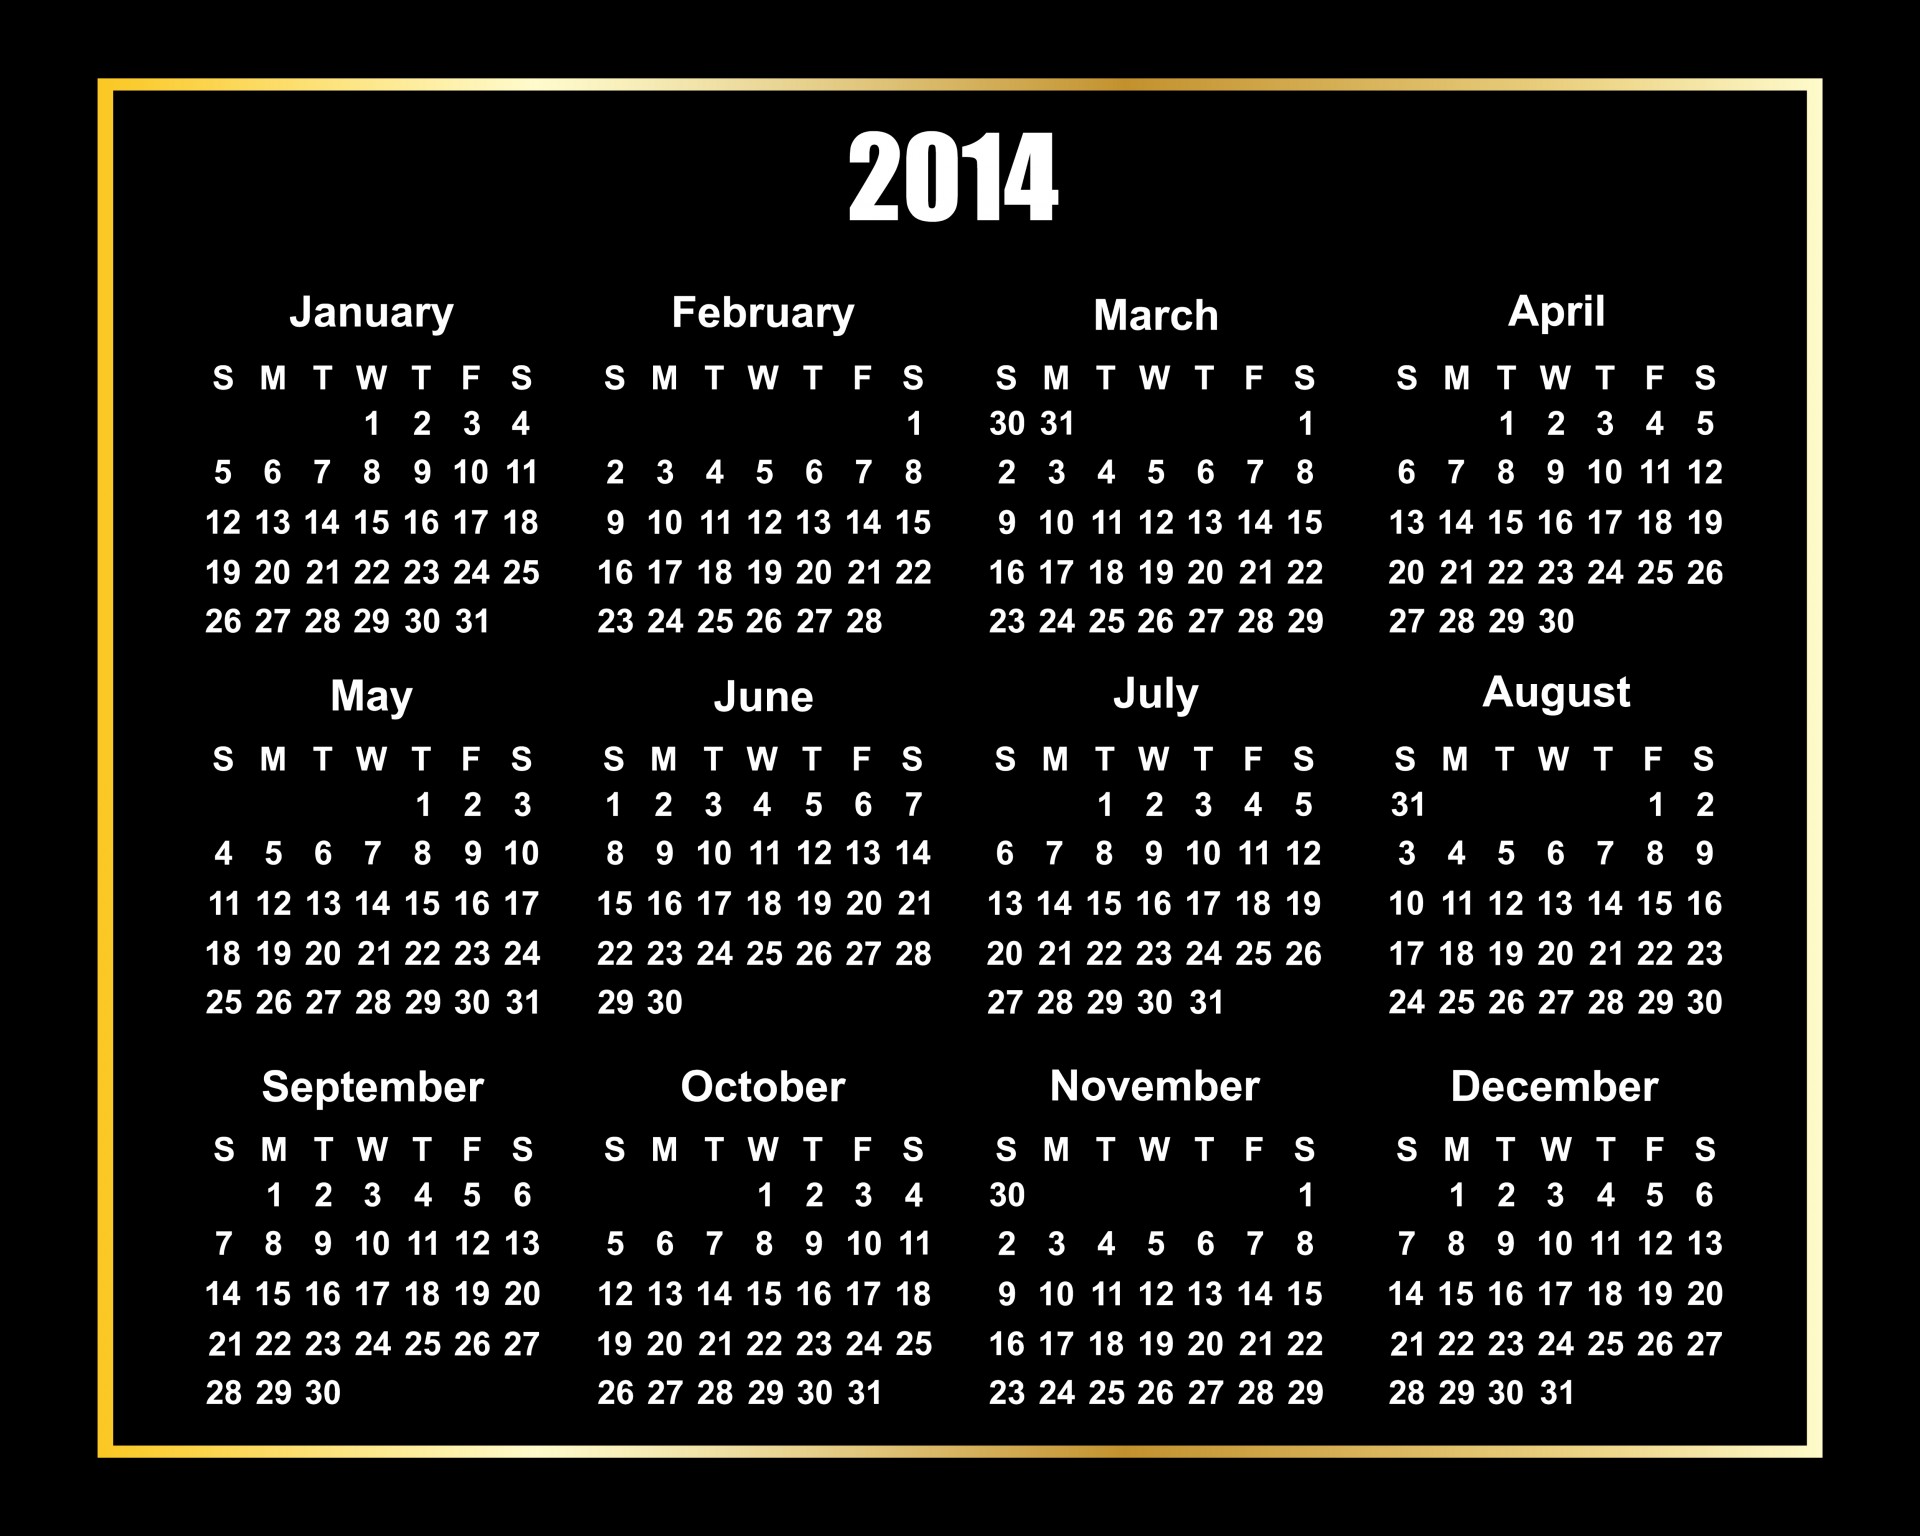 2014 calendar 2014 calendar free photo